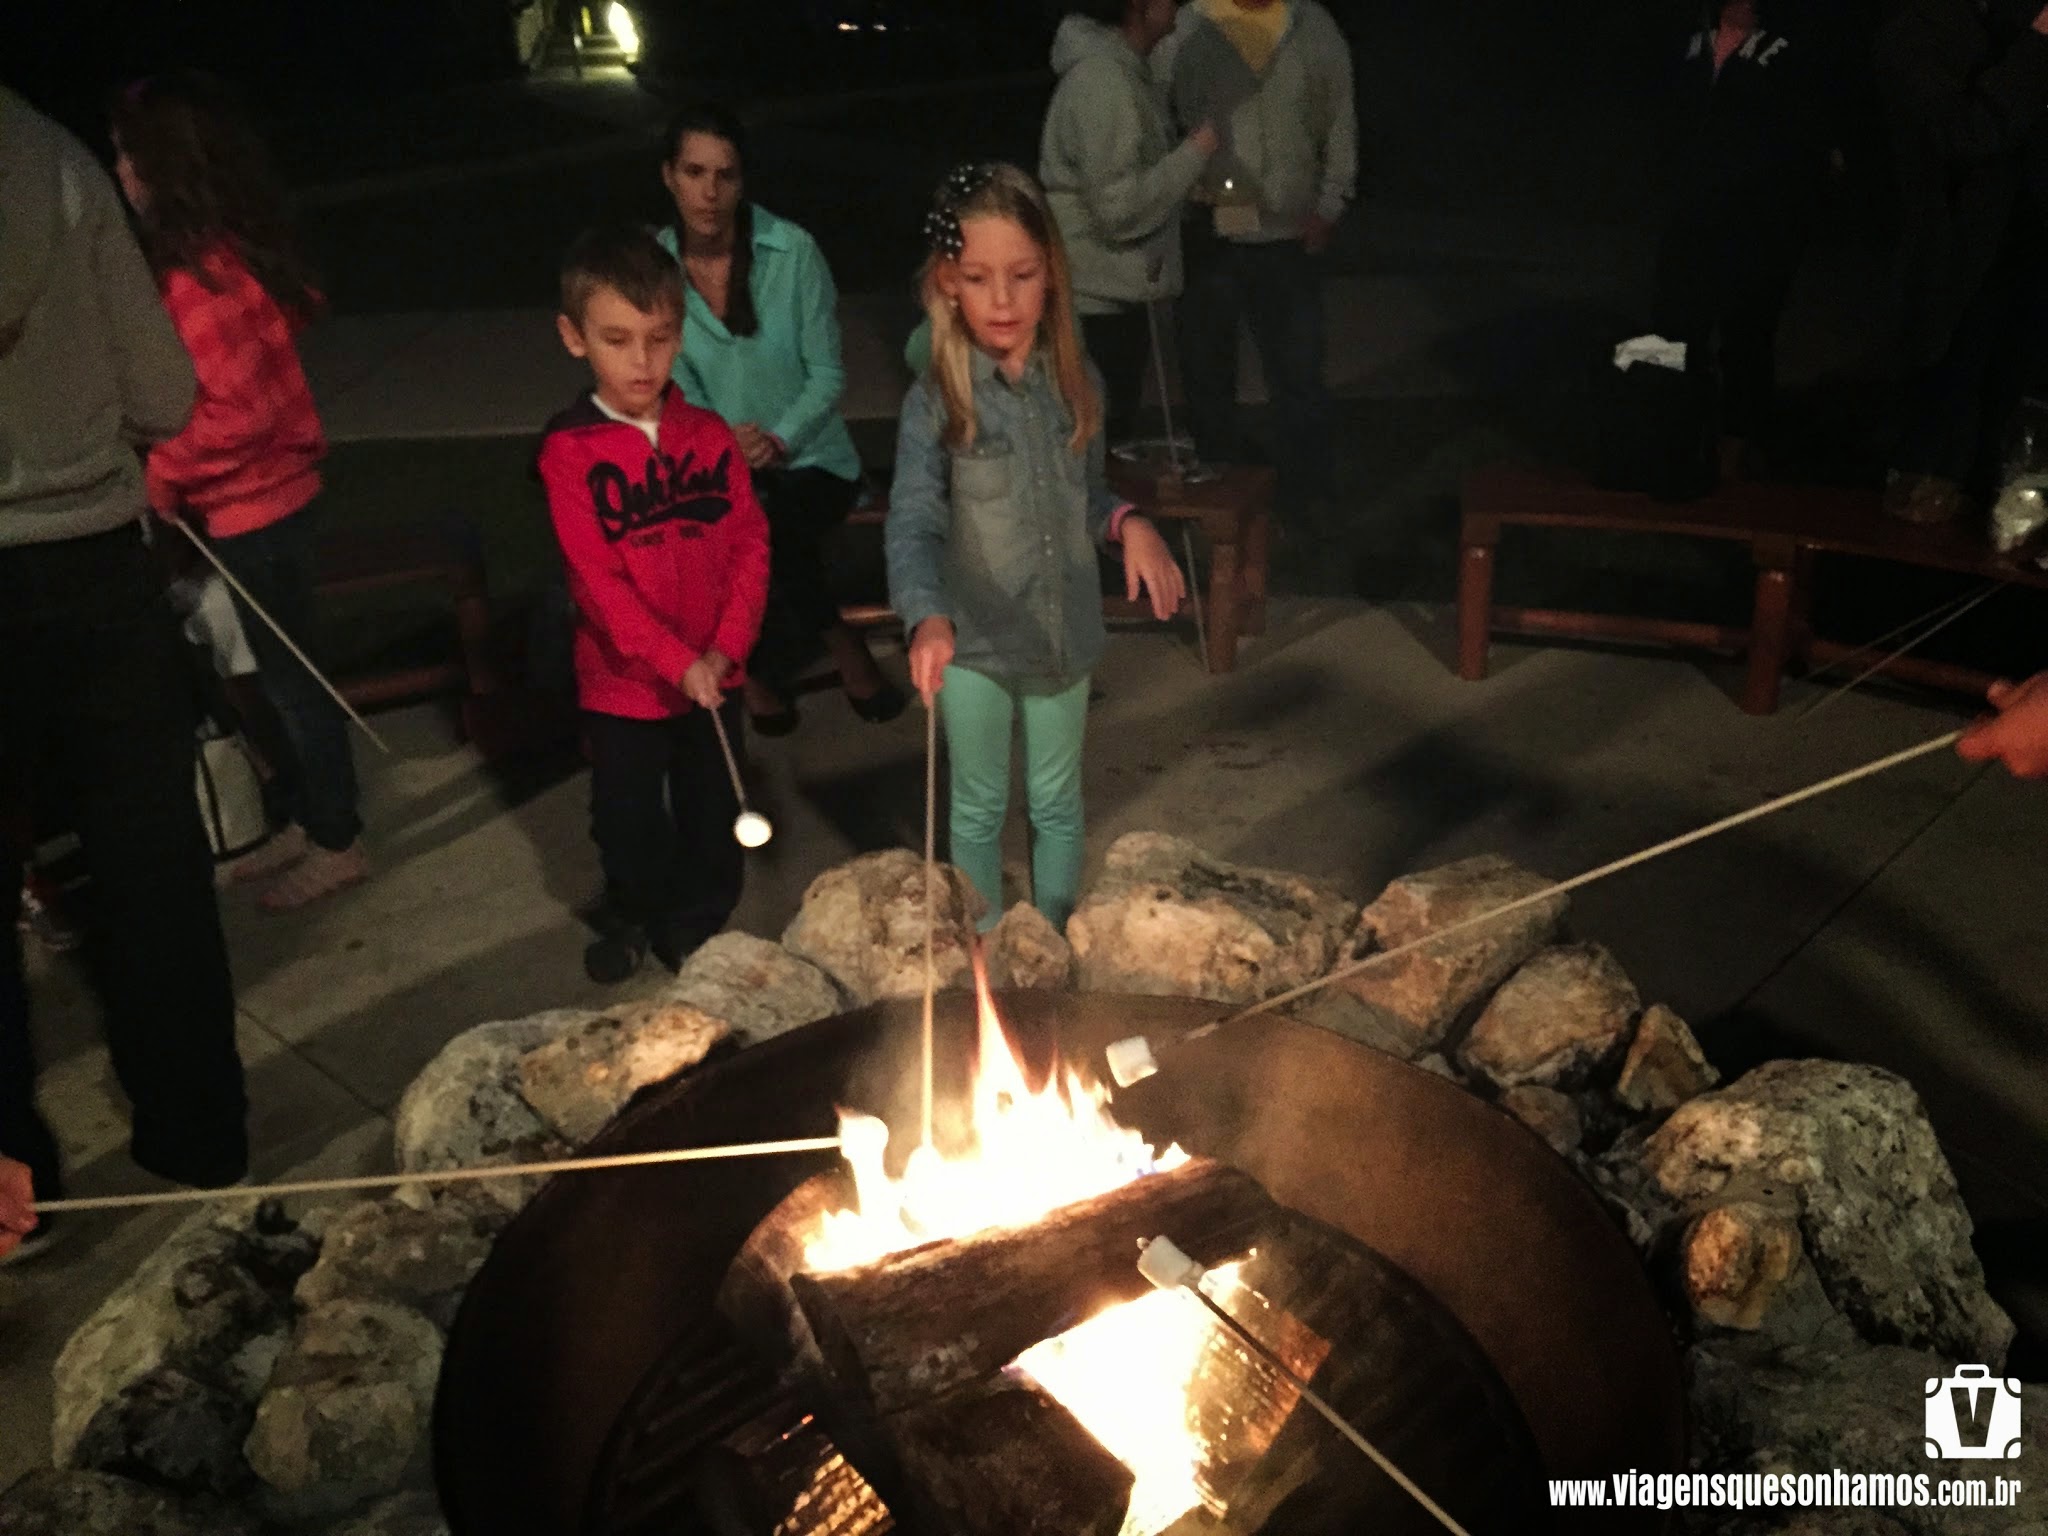 Chip & Dale Campfire: Um lugar para se divertir com o Tico e Teco